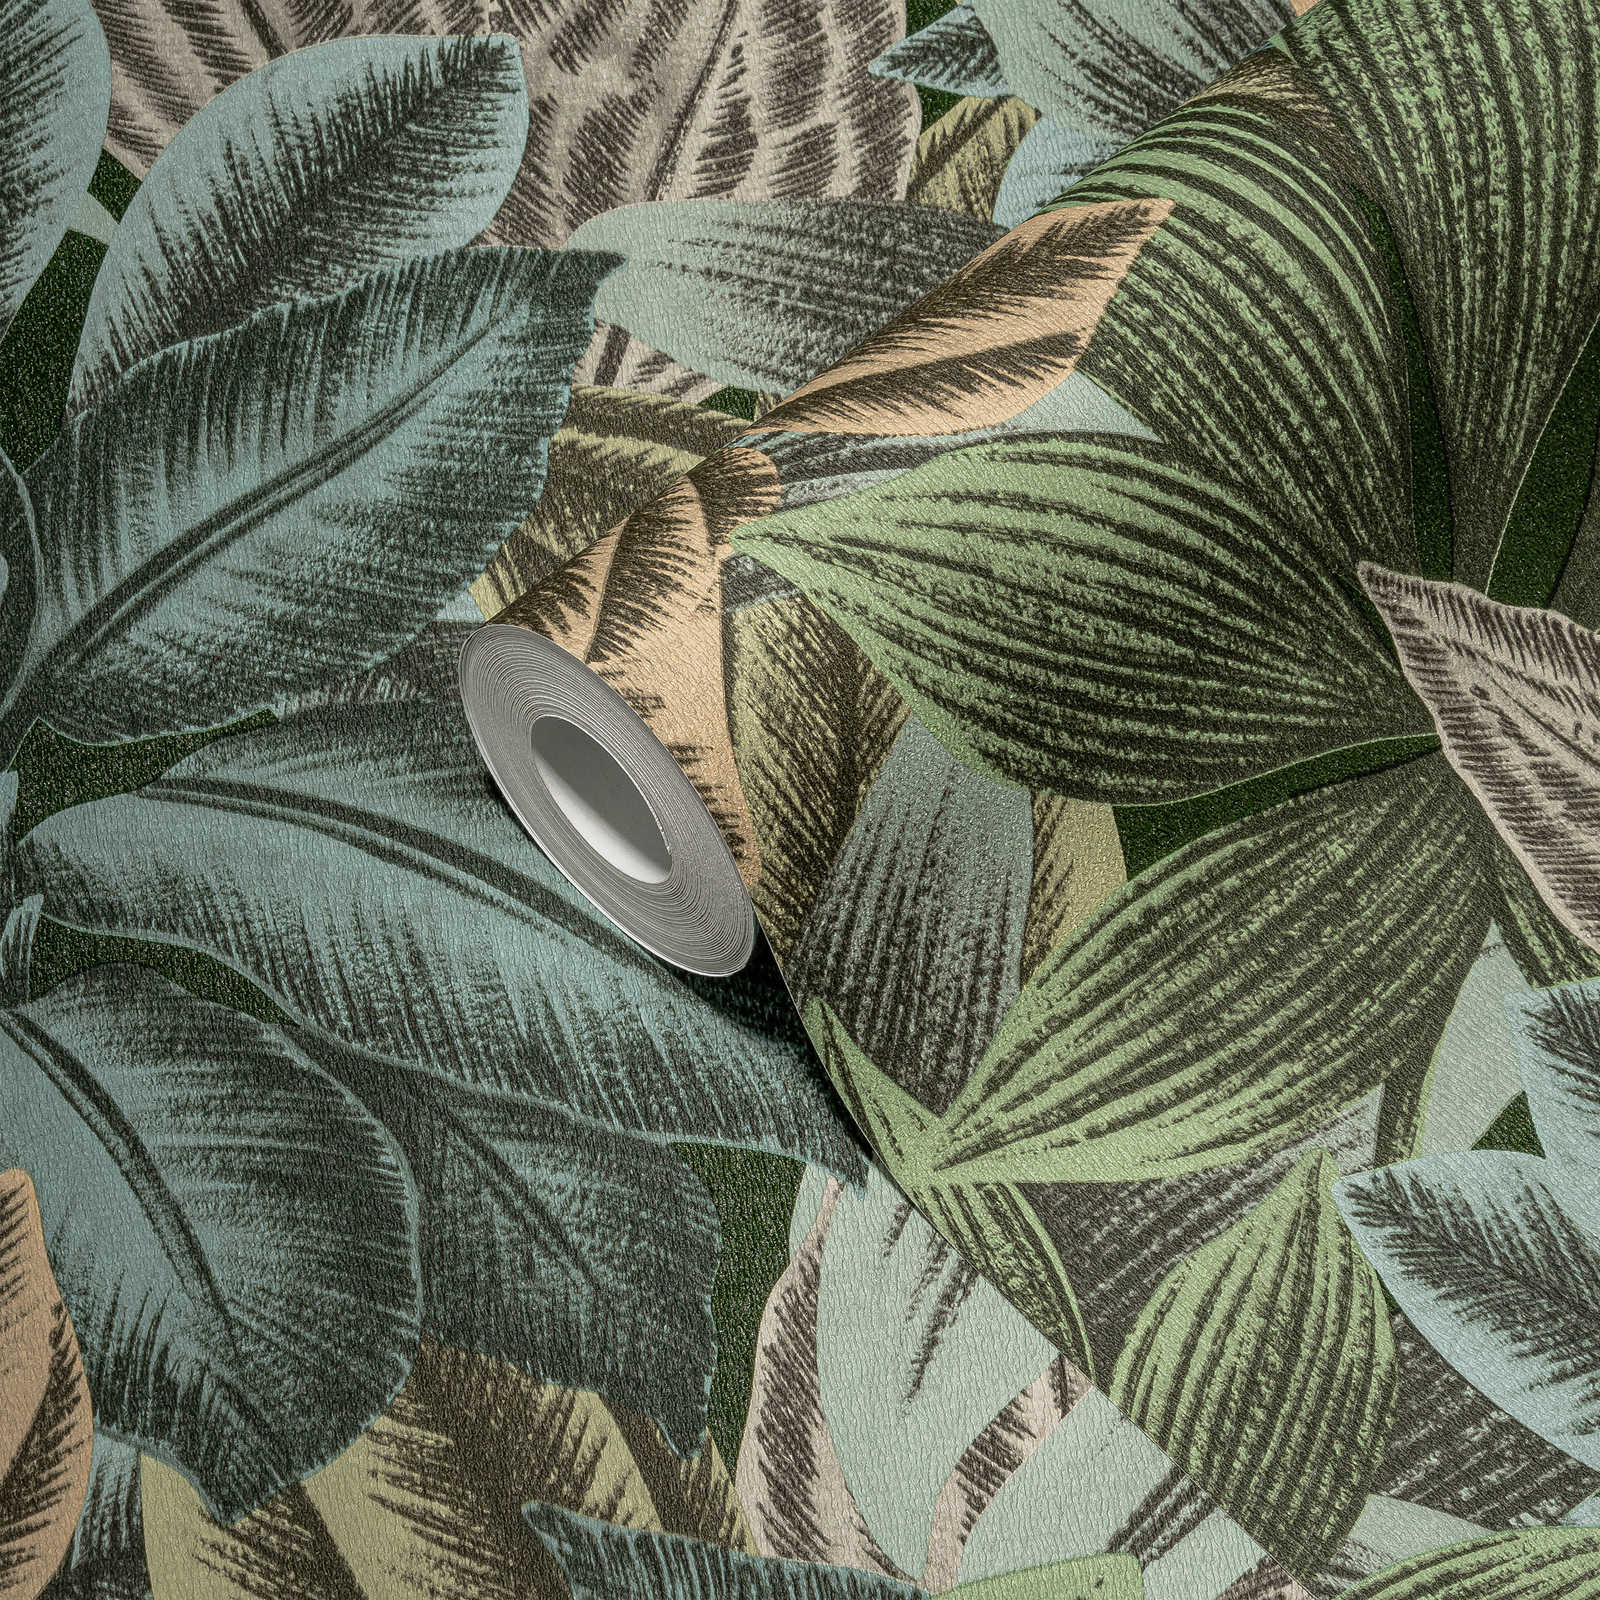             Papier peint à motifs de feuilles avec look tropical - vert, bleu, gris
        